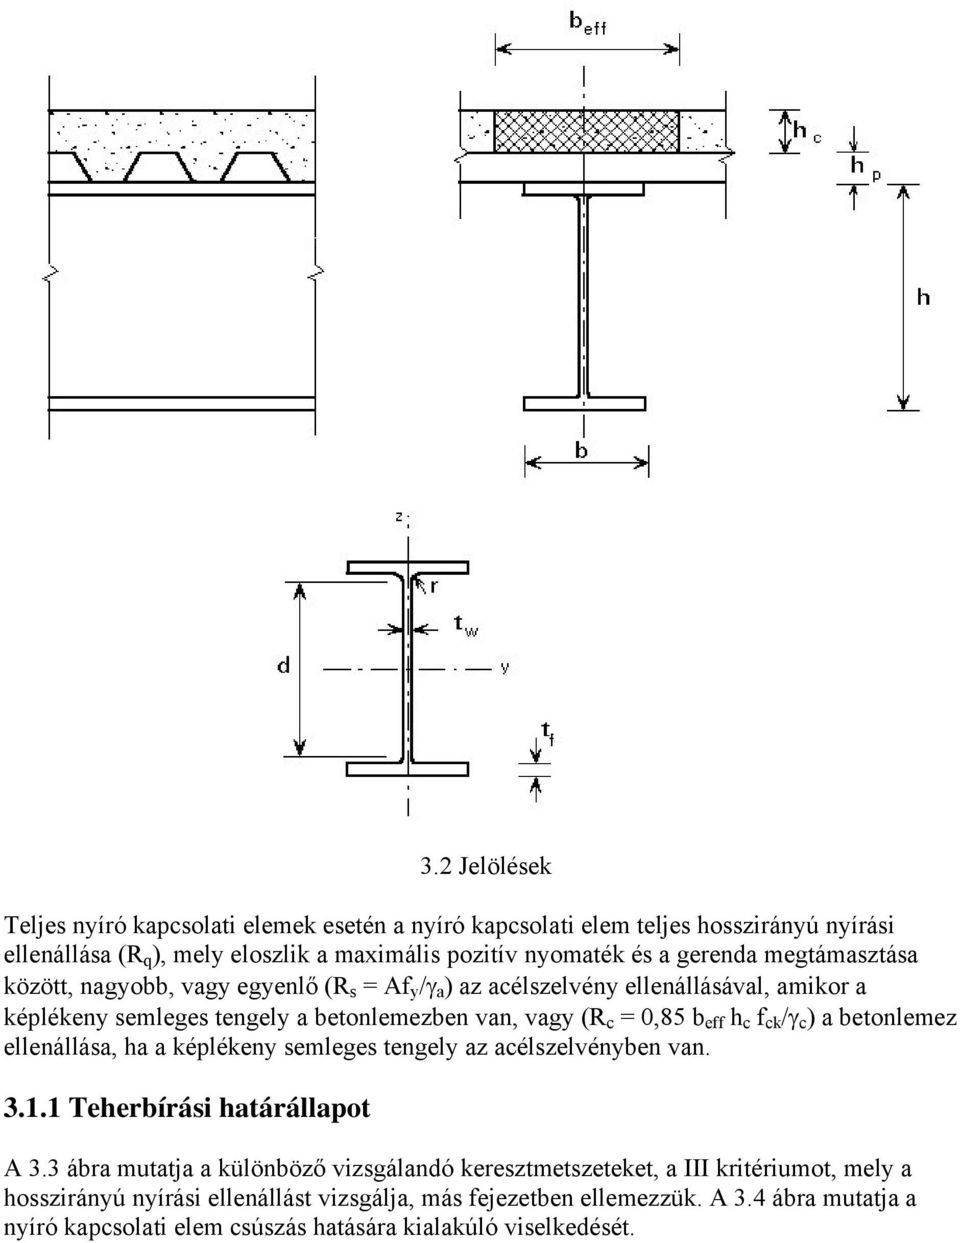 ck /γ c ) a betonlemez ellenállása, ha a képlékeny semleges tengely az acélszelvényben van. 3.1.1 Teherbírási határállapot A 3.